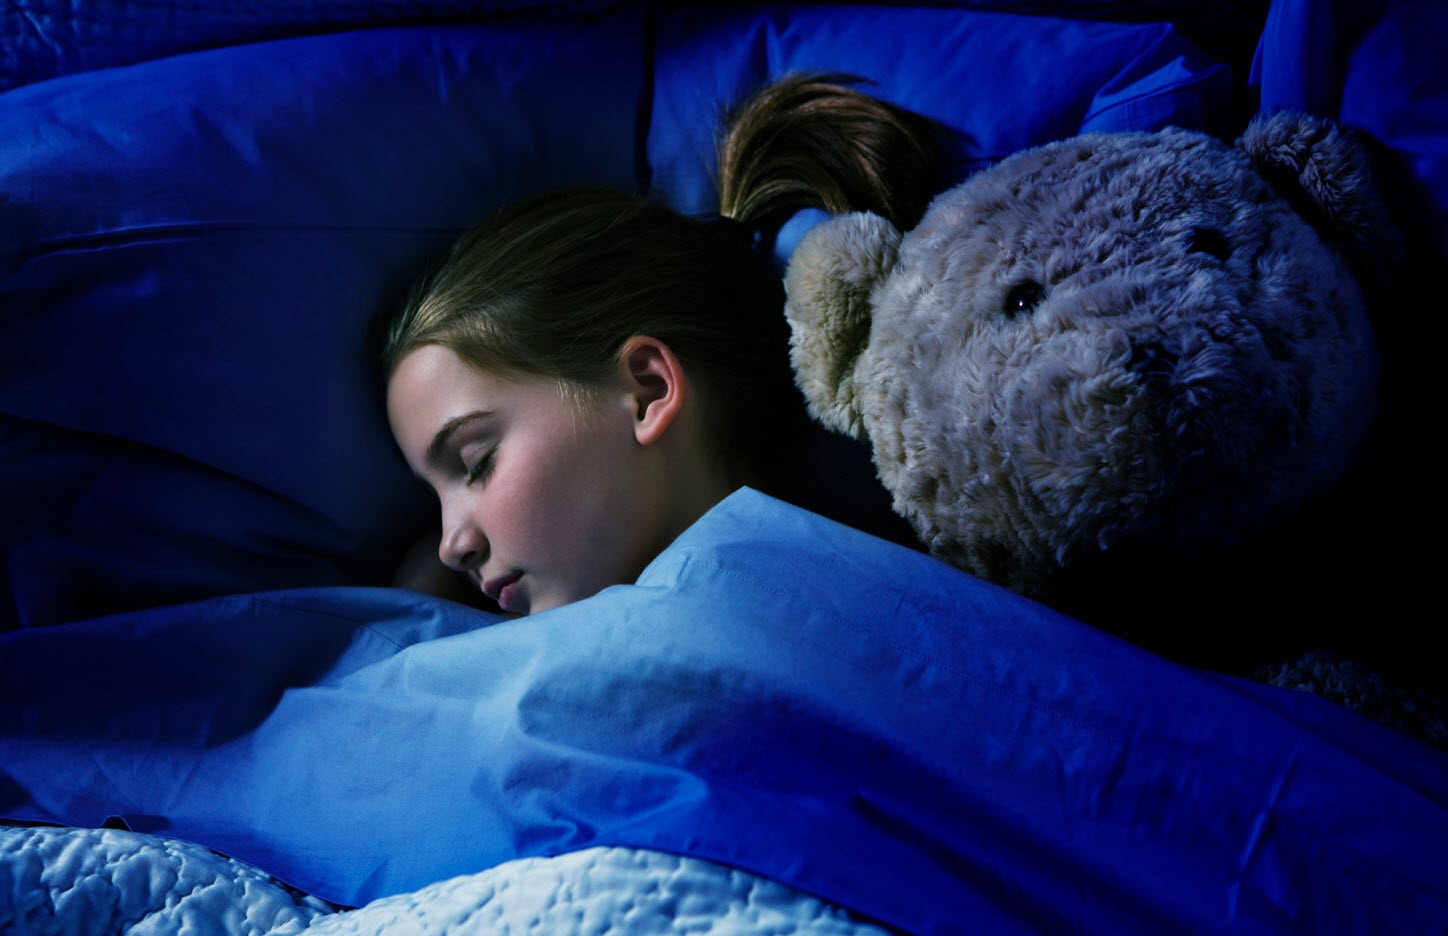 Лечебный компресс хорошо сочетается со спокойным сном выздоравливающего ребенка